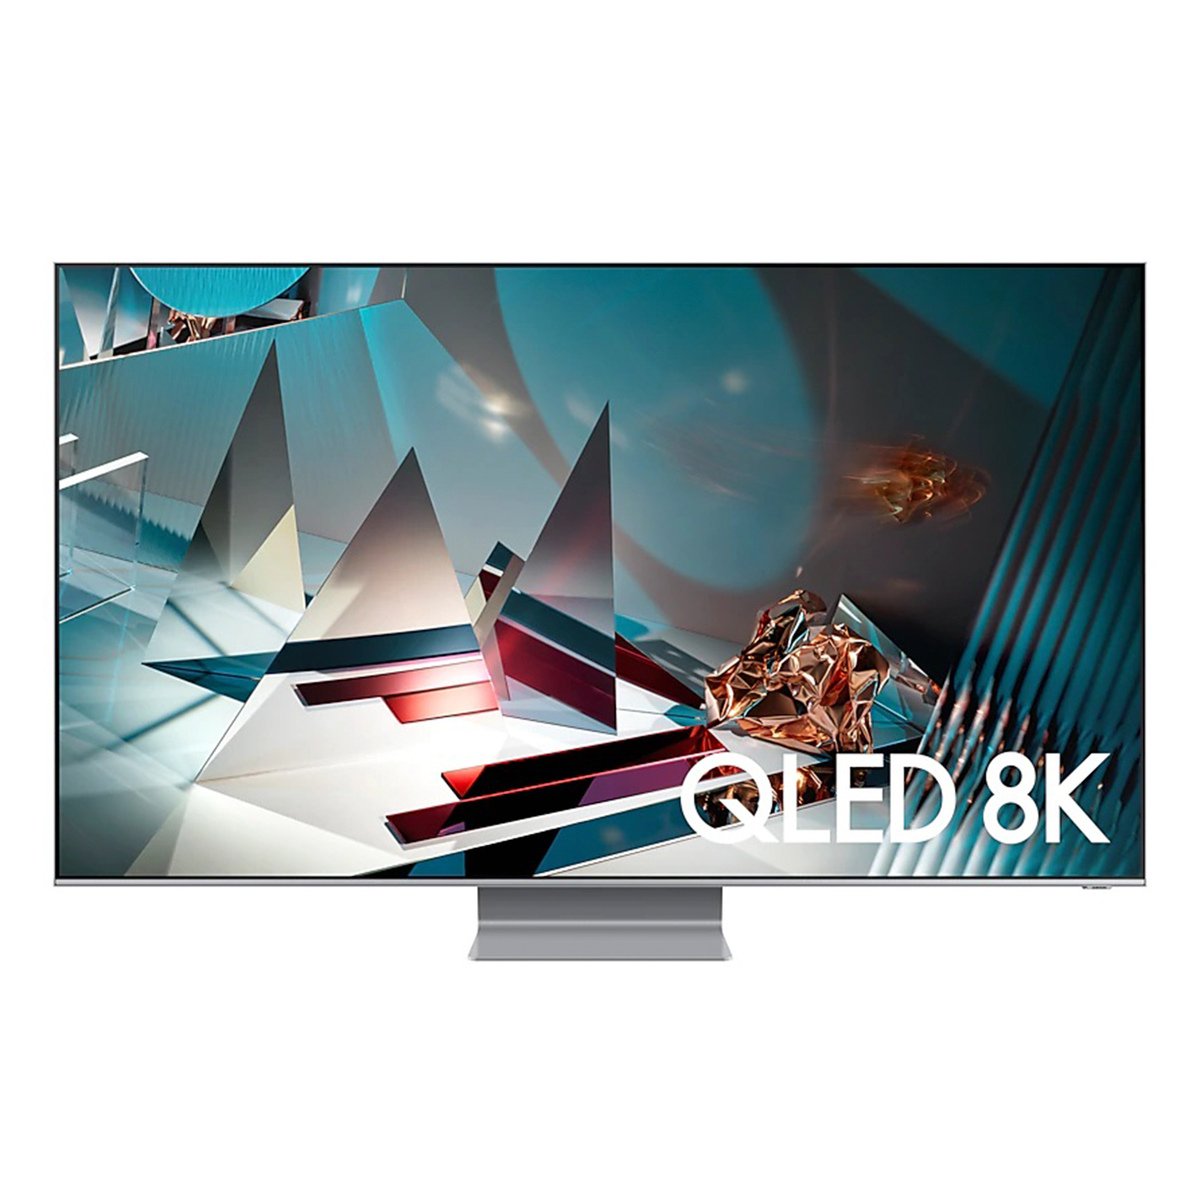 Samsung QLED TV QA65Q800TAUXZN 65Inches Series(2020)